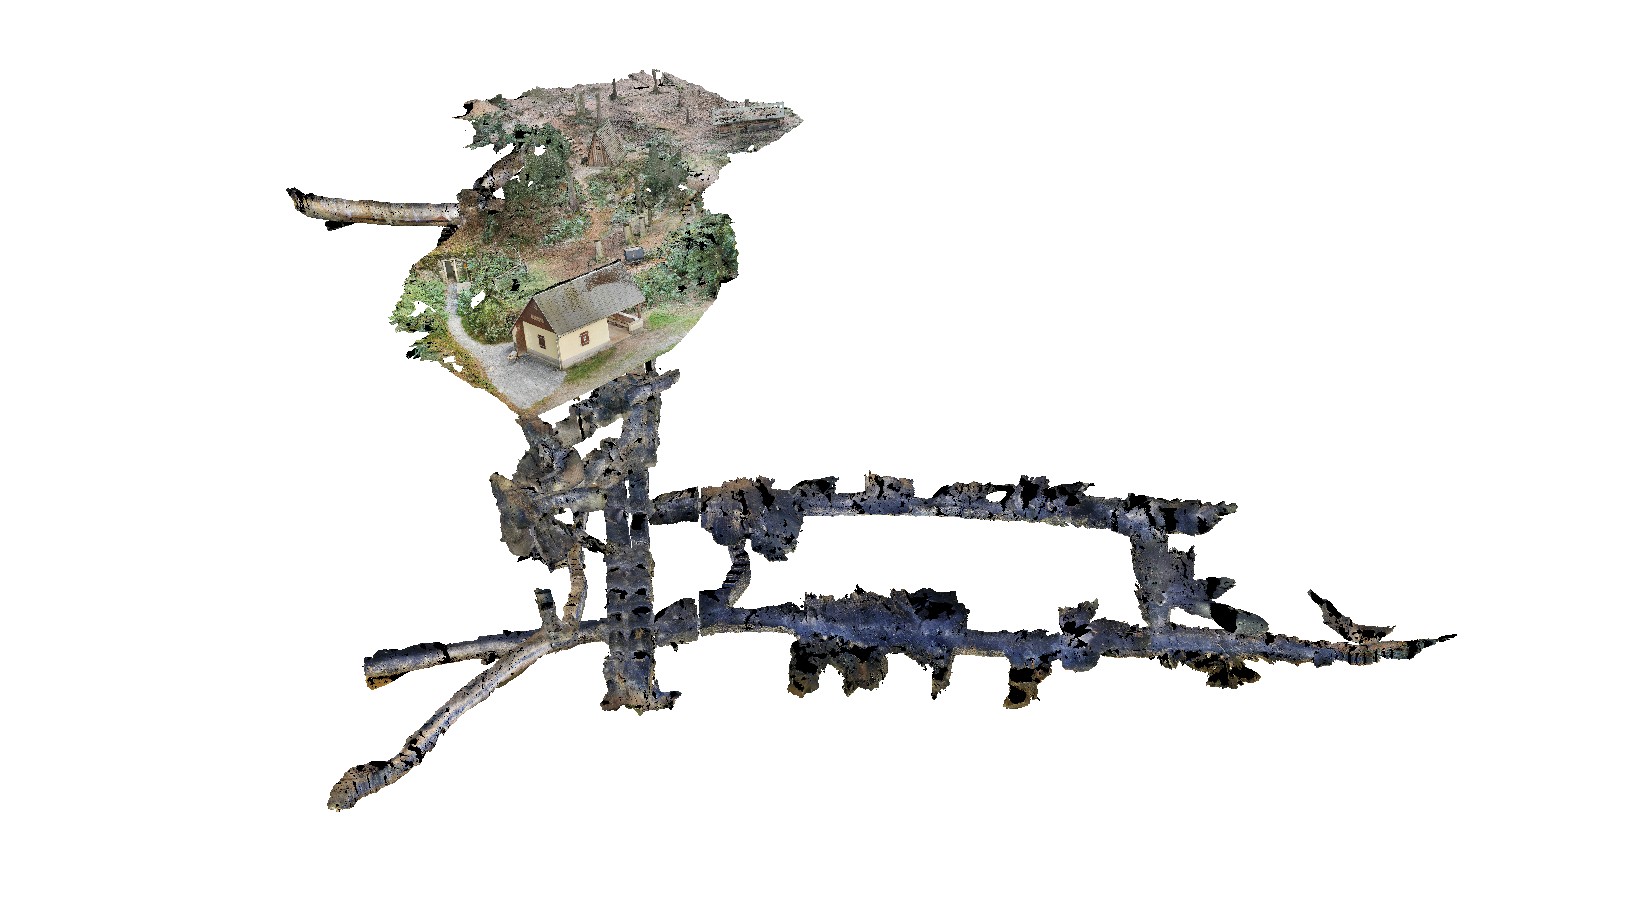 3D-Grubenriss aus 6433 Fotos - erstelltes 3D-Bergwerk